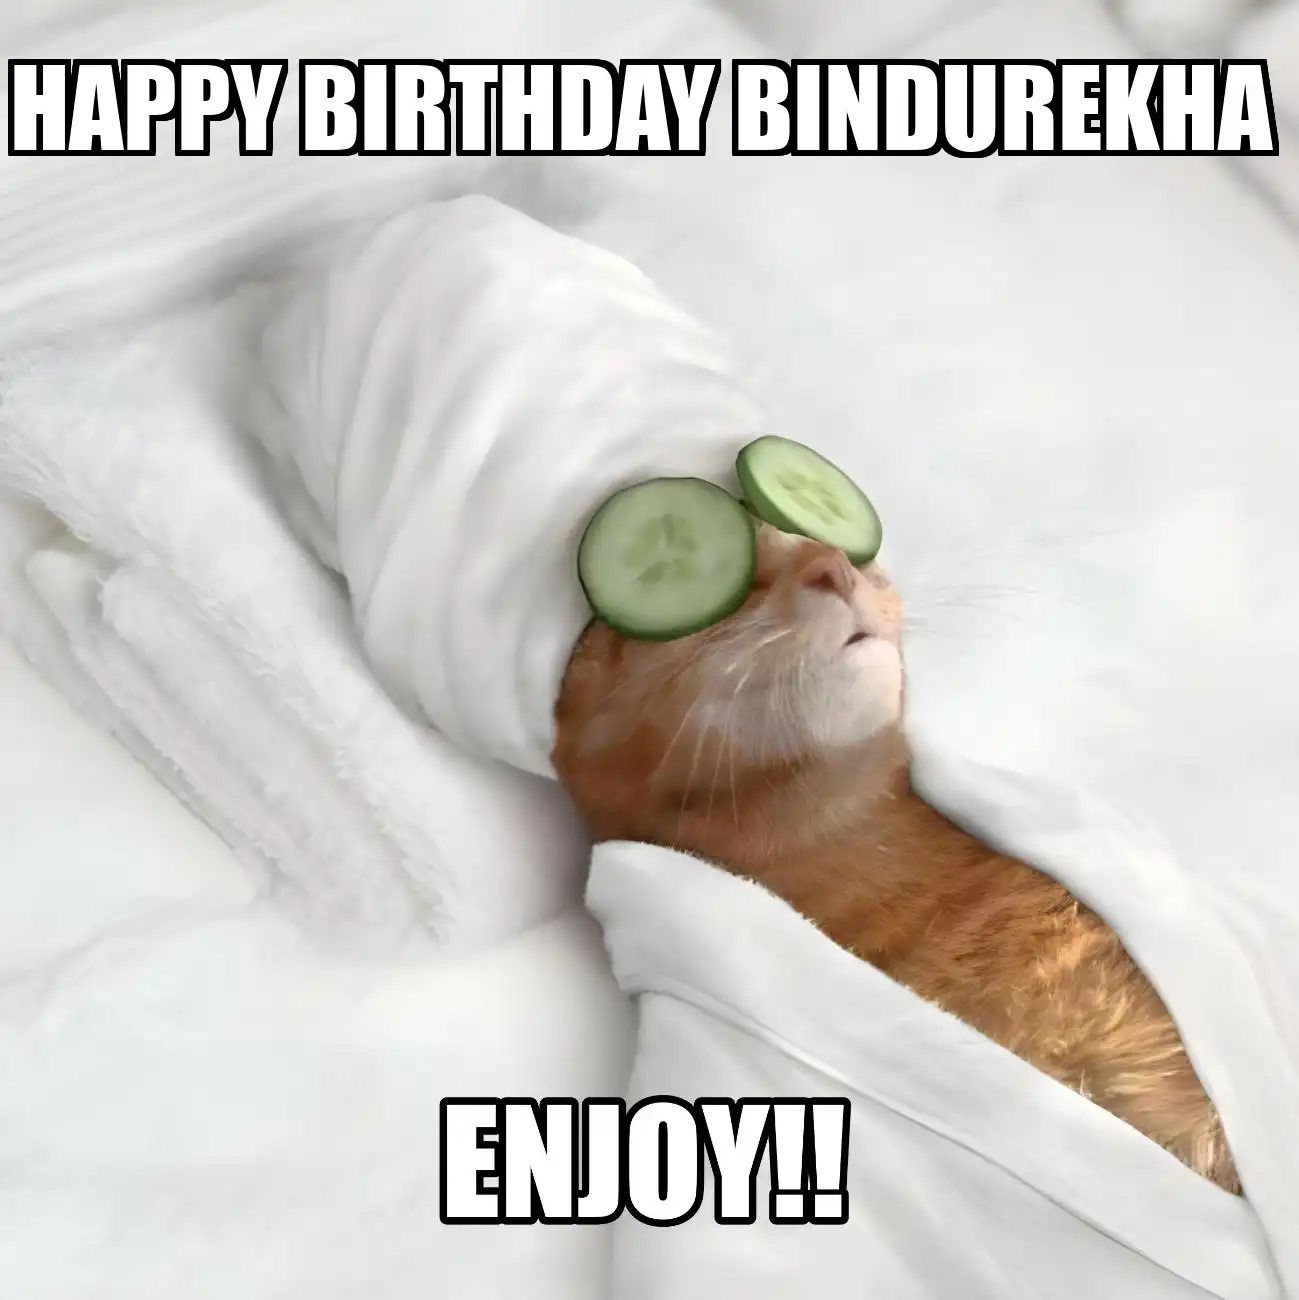 Happy Birthday Bindurekha Enjoy Cat Meme